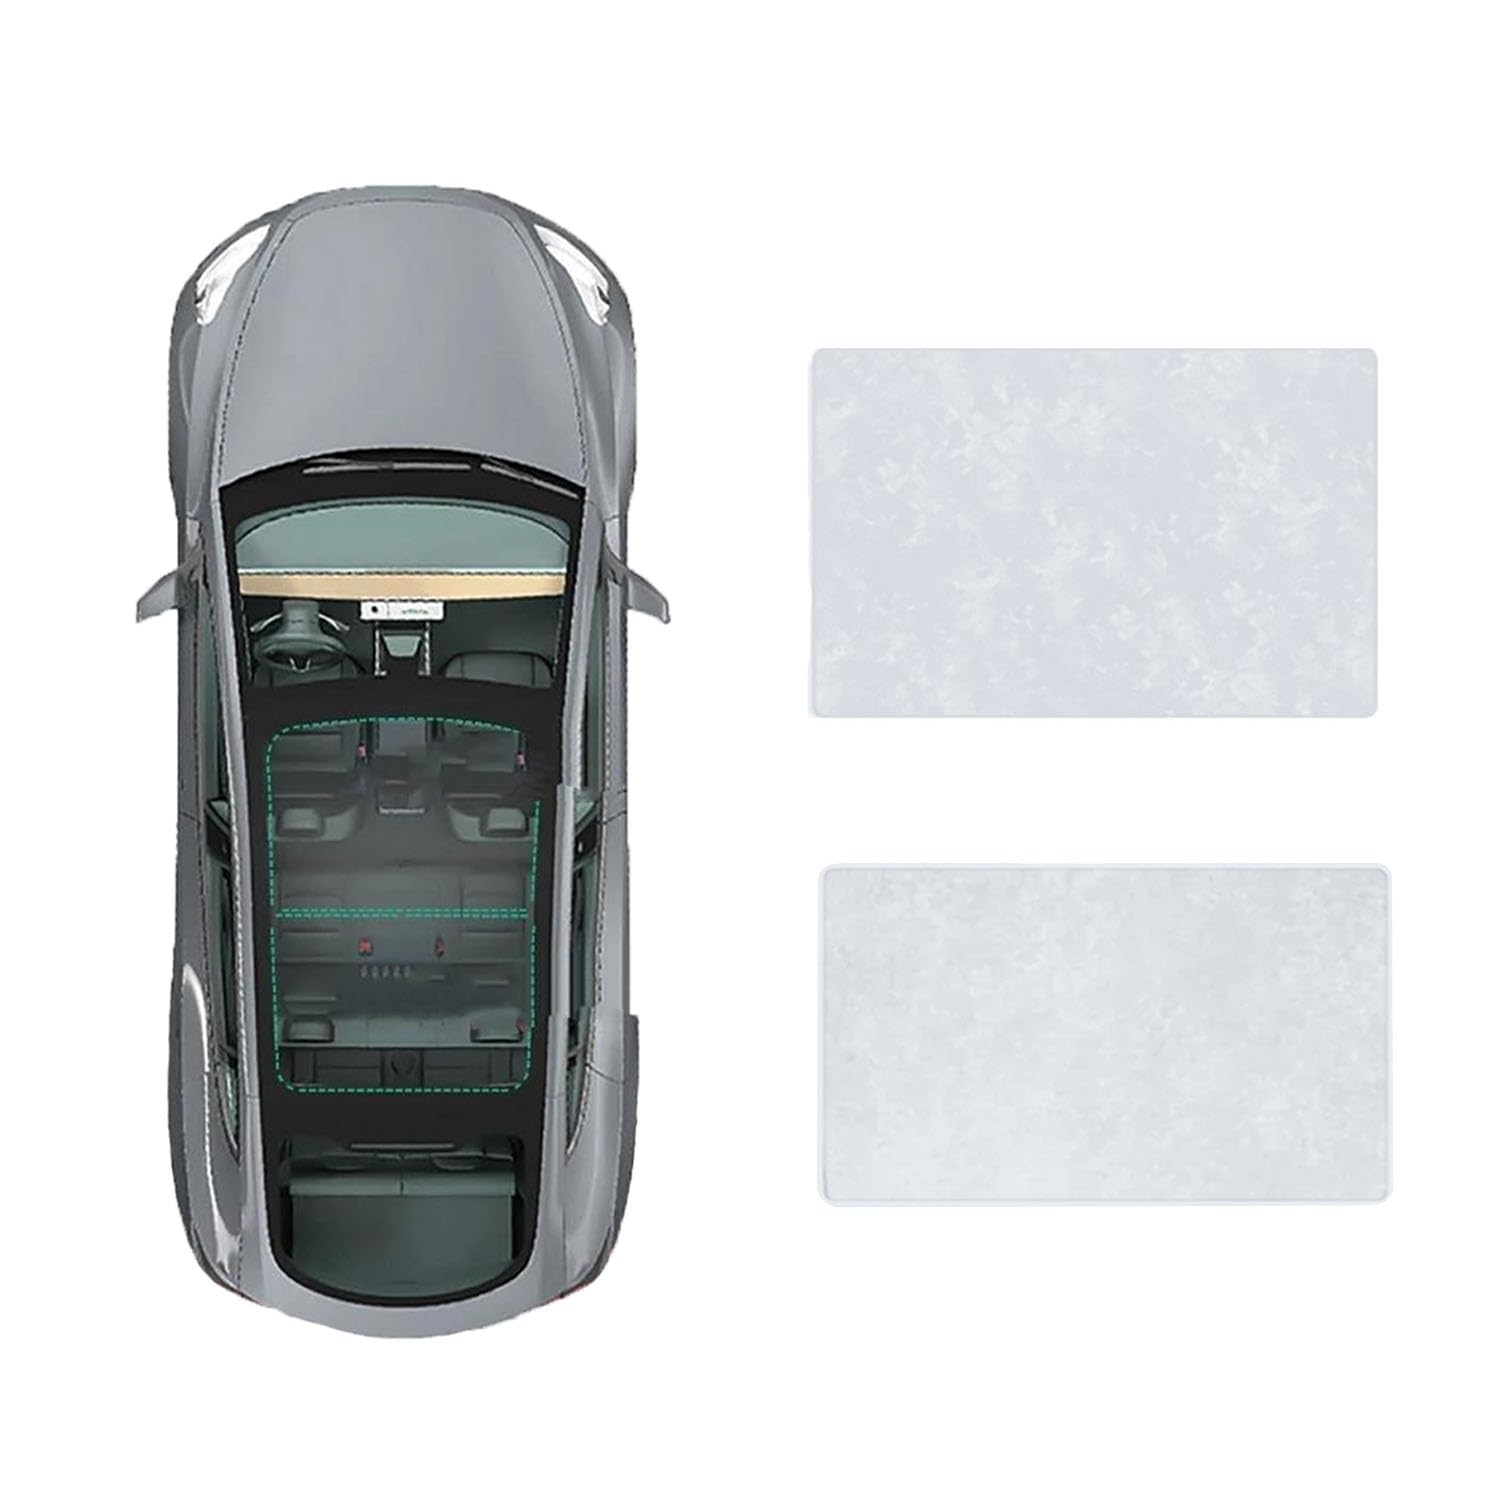 Auto-Schiebedach-Beschattung Für BYD Song plus 2021-,Auto Schiebedach Sonnenschutz Dachfenster Dach Wärme Isolierung Beschattung Innen,B-Gray white Suede von LiuROSE